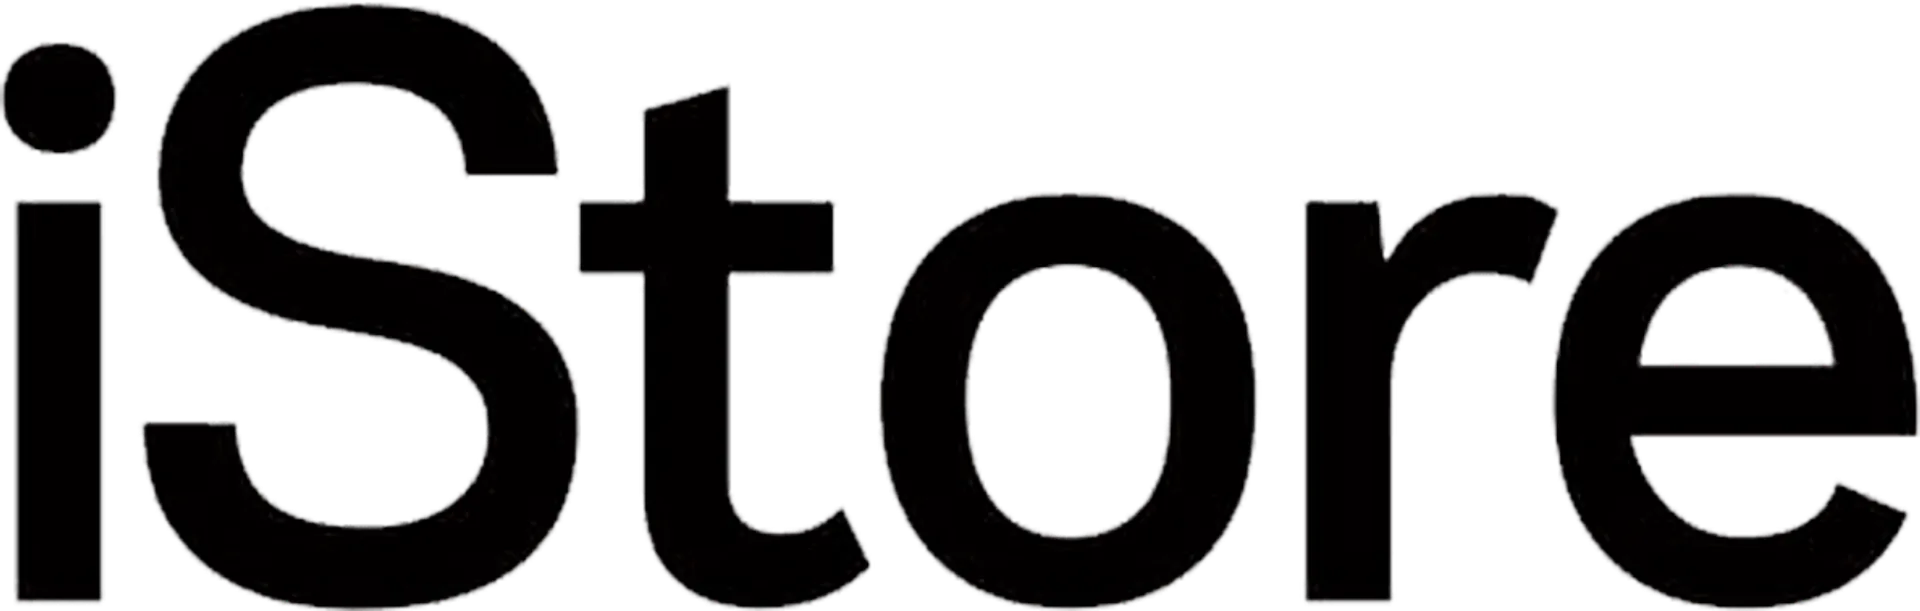 ISTORES logo